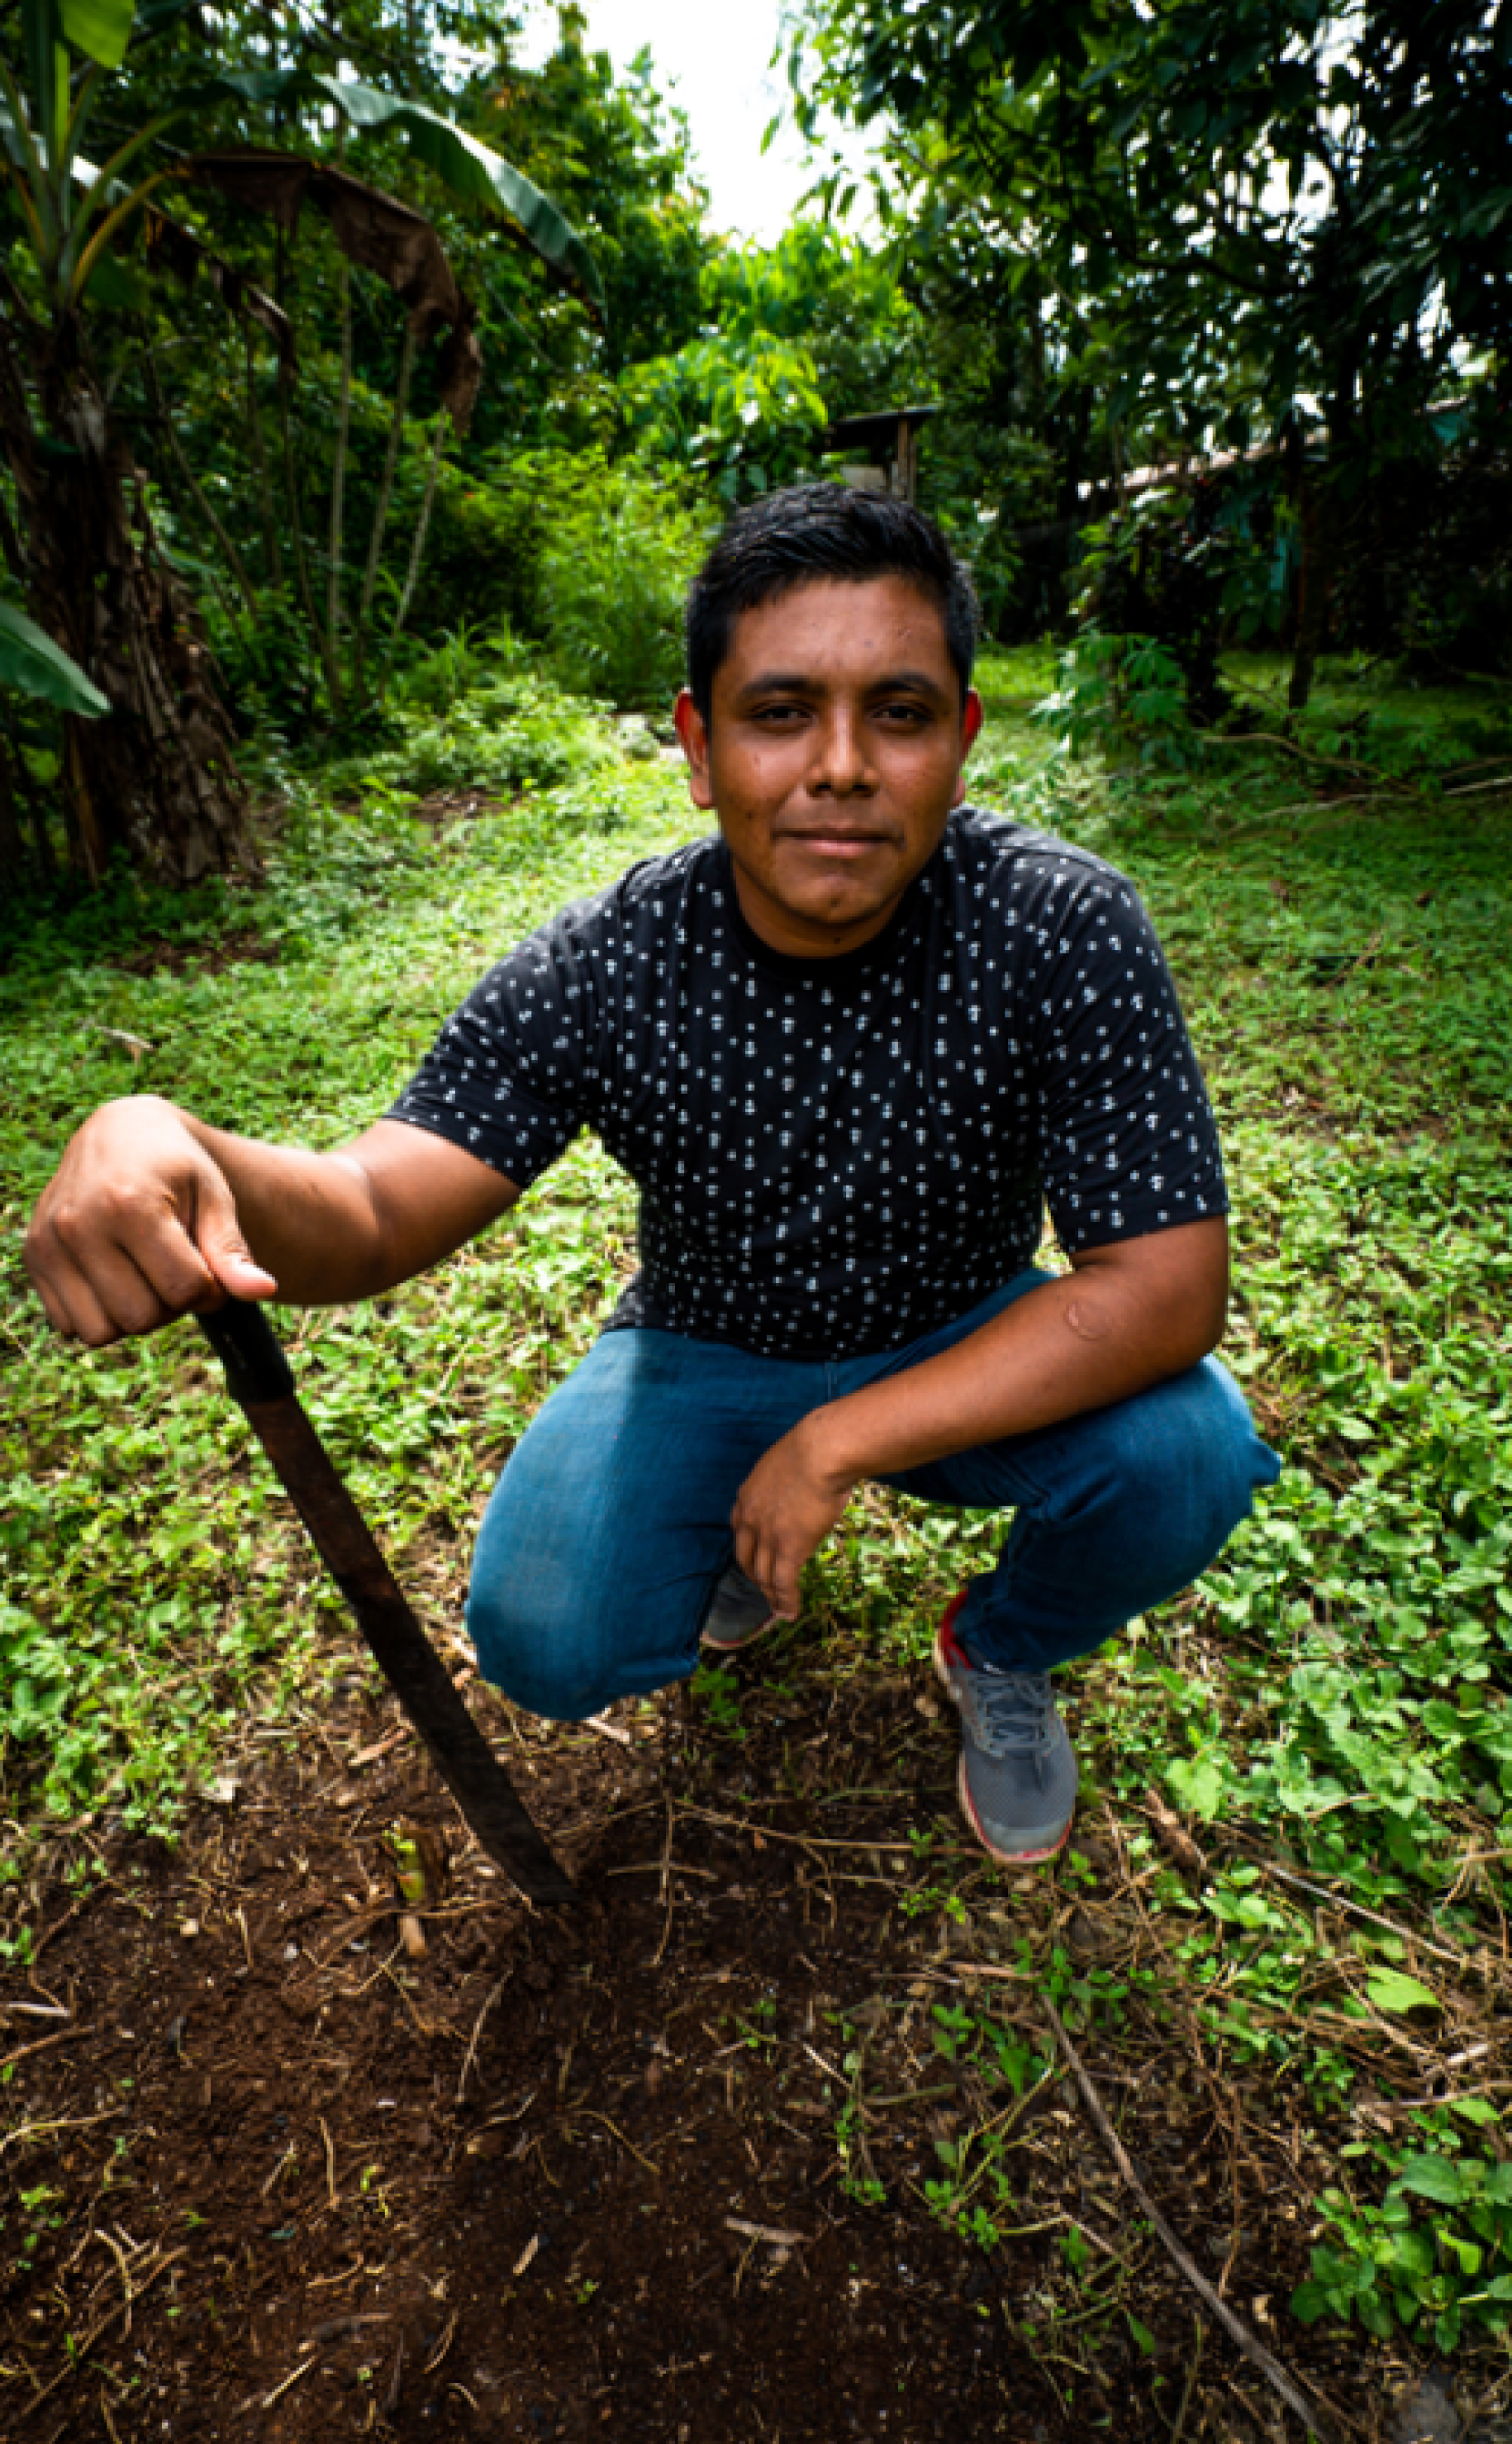 Un jeune homme vêtu d’un jean bleu et d’un t-shirt bleu nuit est accroupi au sol, une pelle à la main droite, au milieu d’un champ verdoyant parsemé d'arbres, et sourit à la caméra.